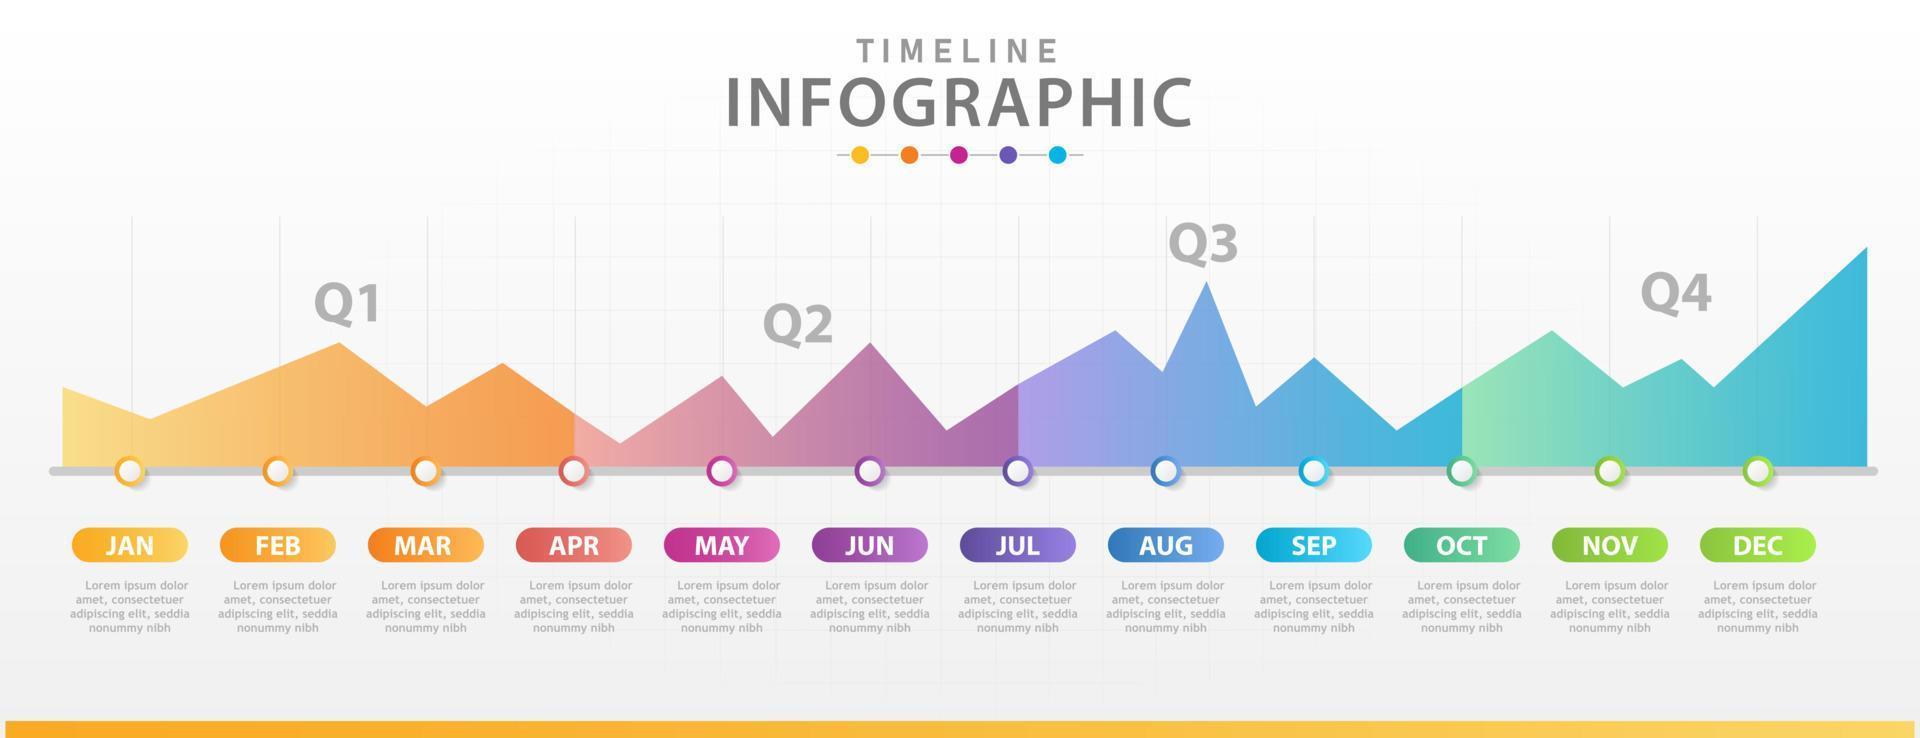 modello di infografica per le imprese. calendario del diagramma temporale moderno 2019 con trimestri, infografica vettoriale di presentazione.